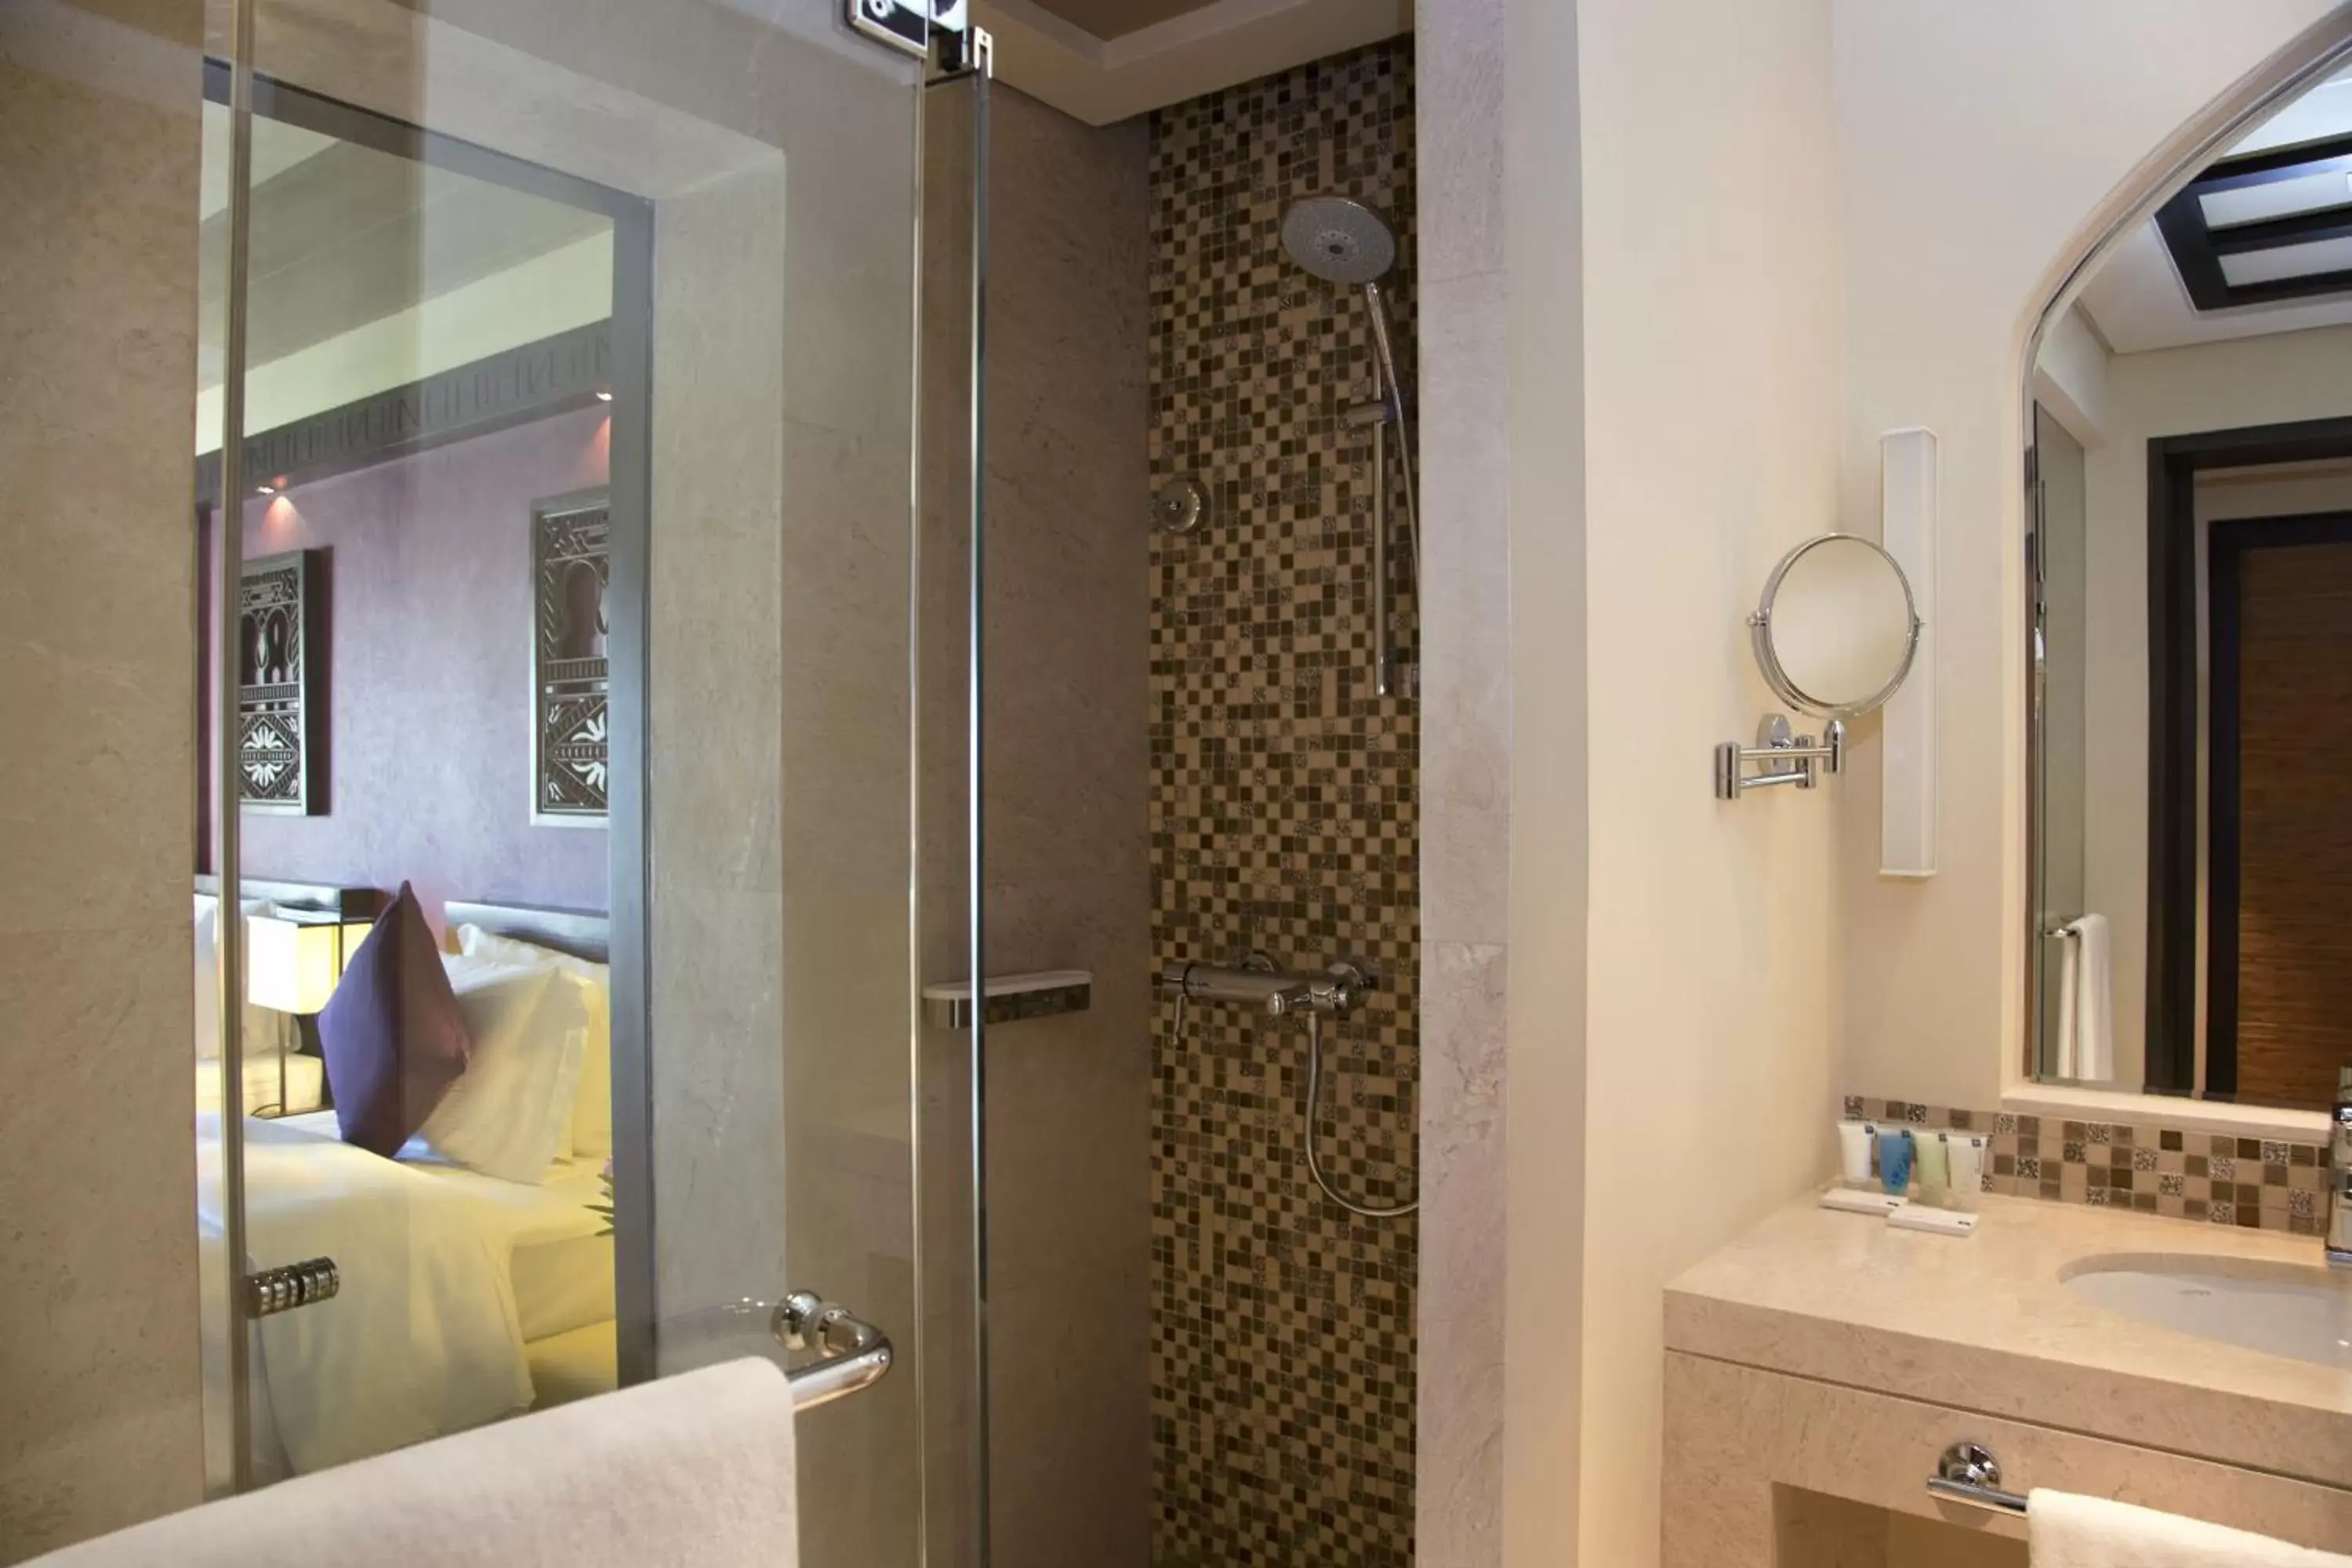 Decorative detail, Bathroom in Salalah Rotana Resort